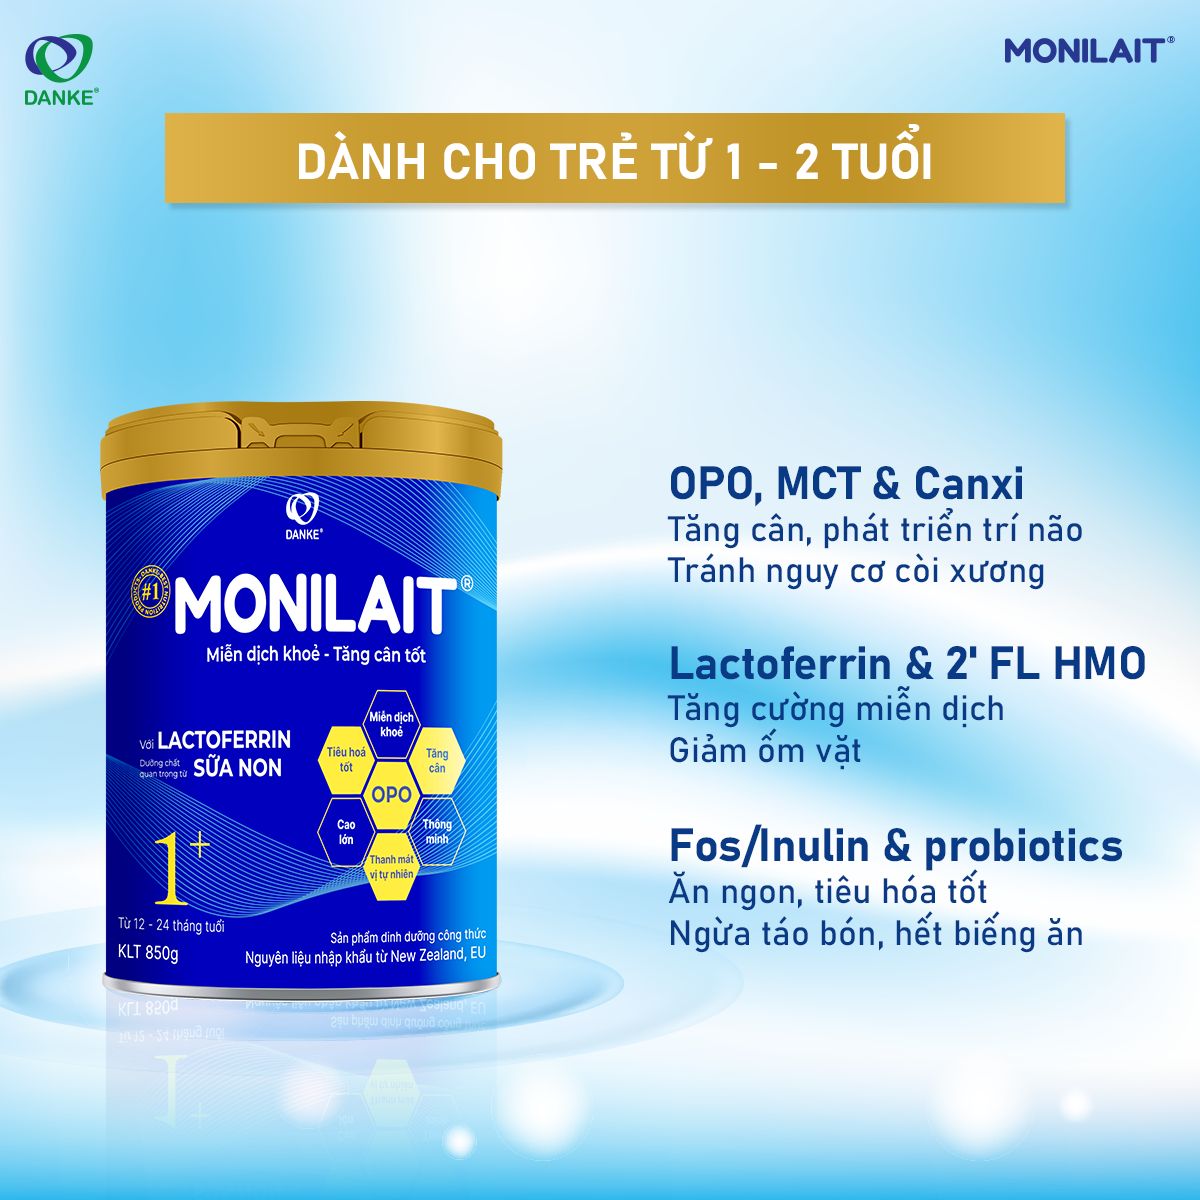 Sữa Monilait Lactoferrin 1+ tốt cho đường tiêu hóa của trẻ